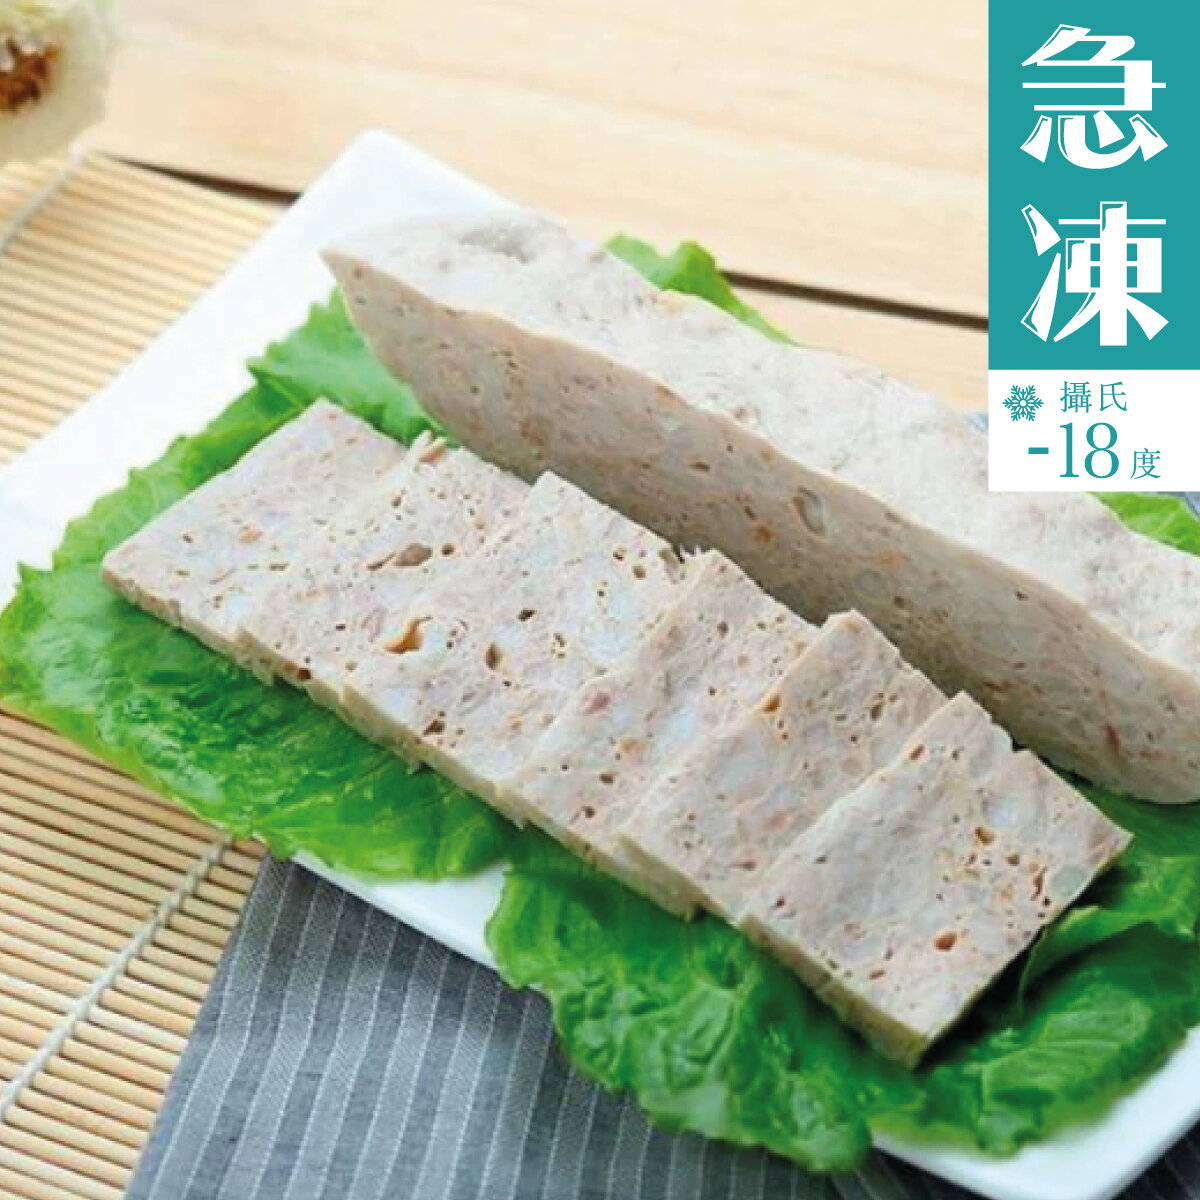 Chiu Chow Pork Sausage